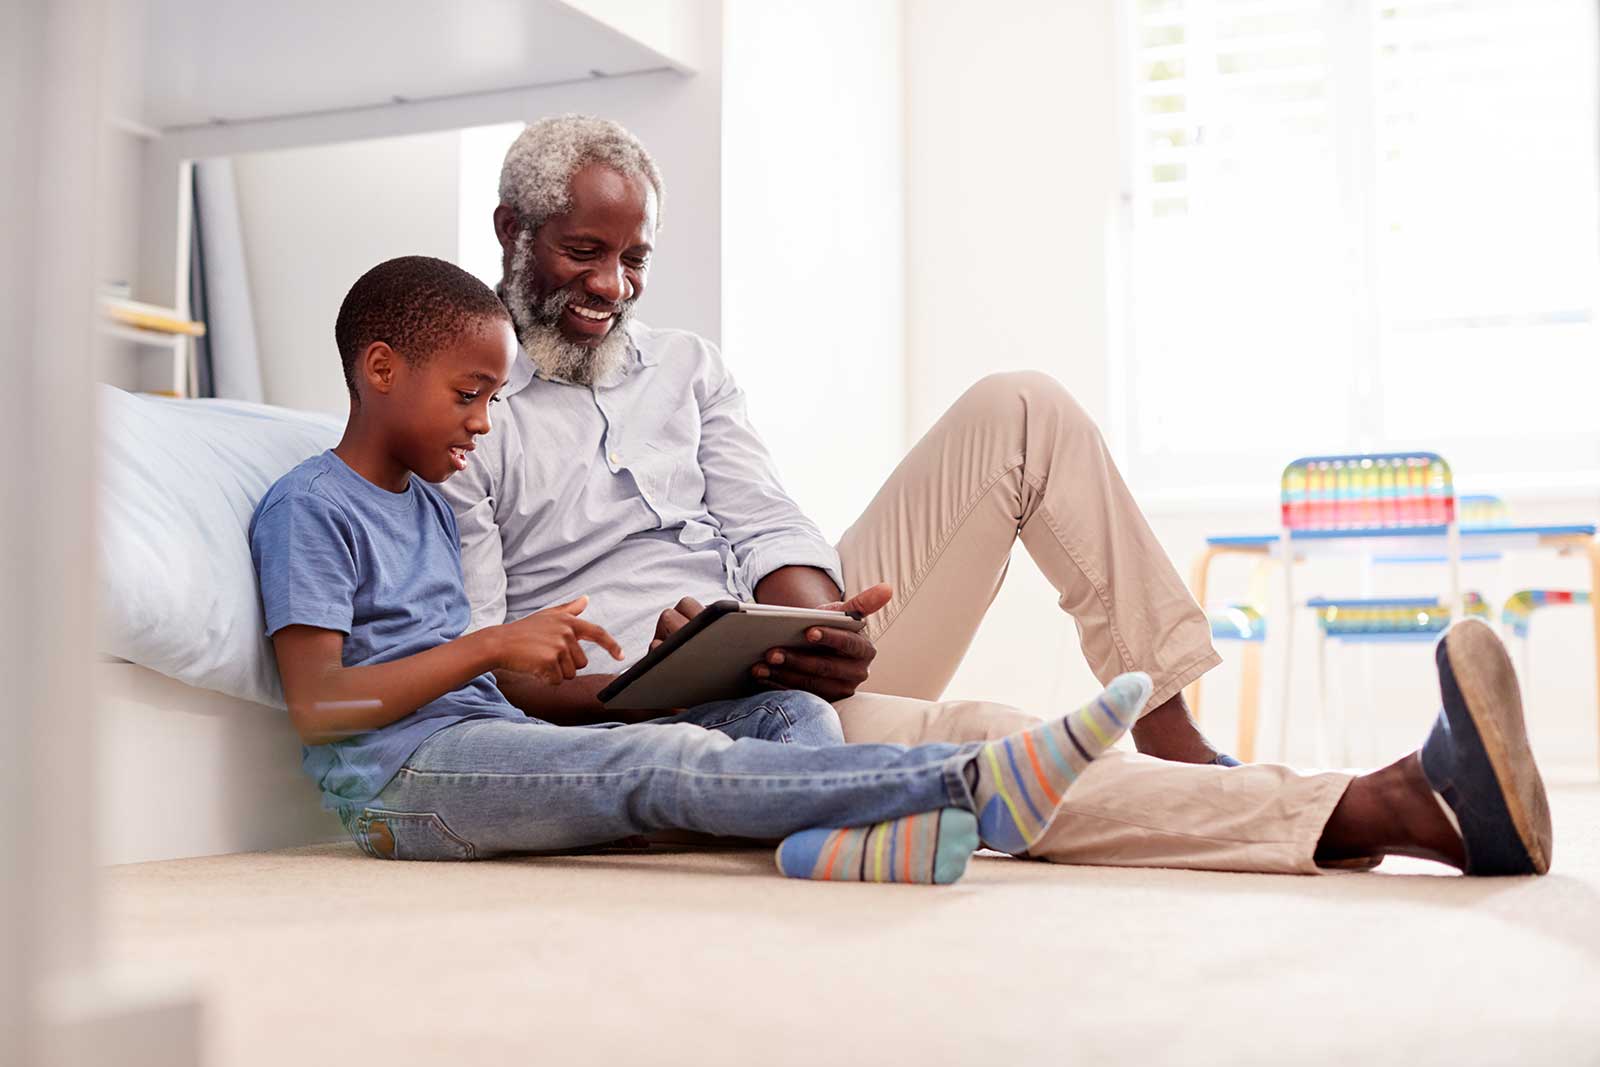 Foto de um avô com seu neto brincando em um tablet